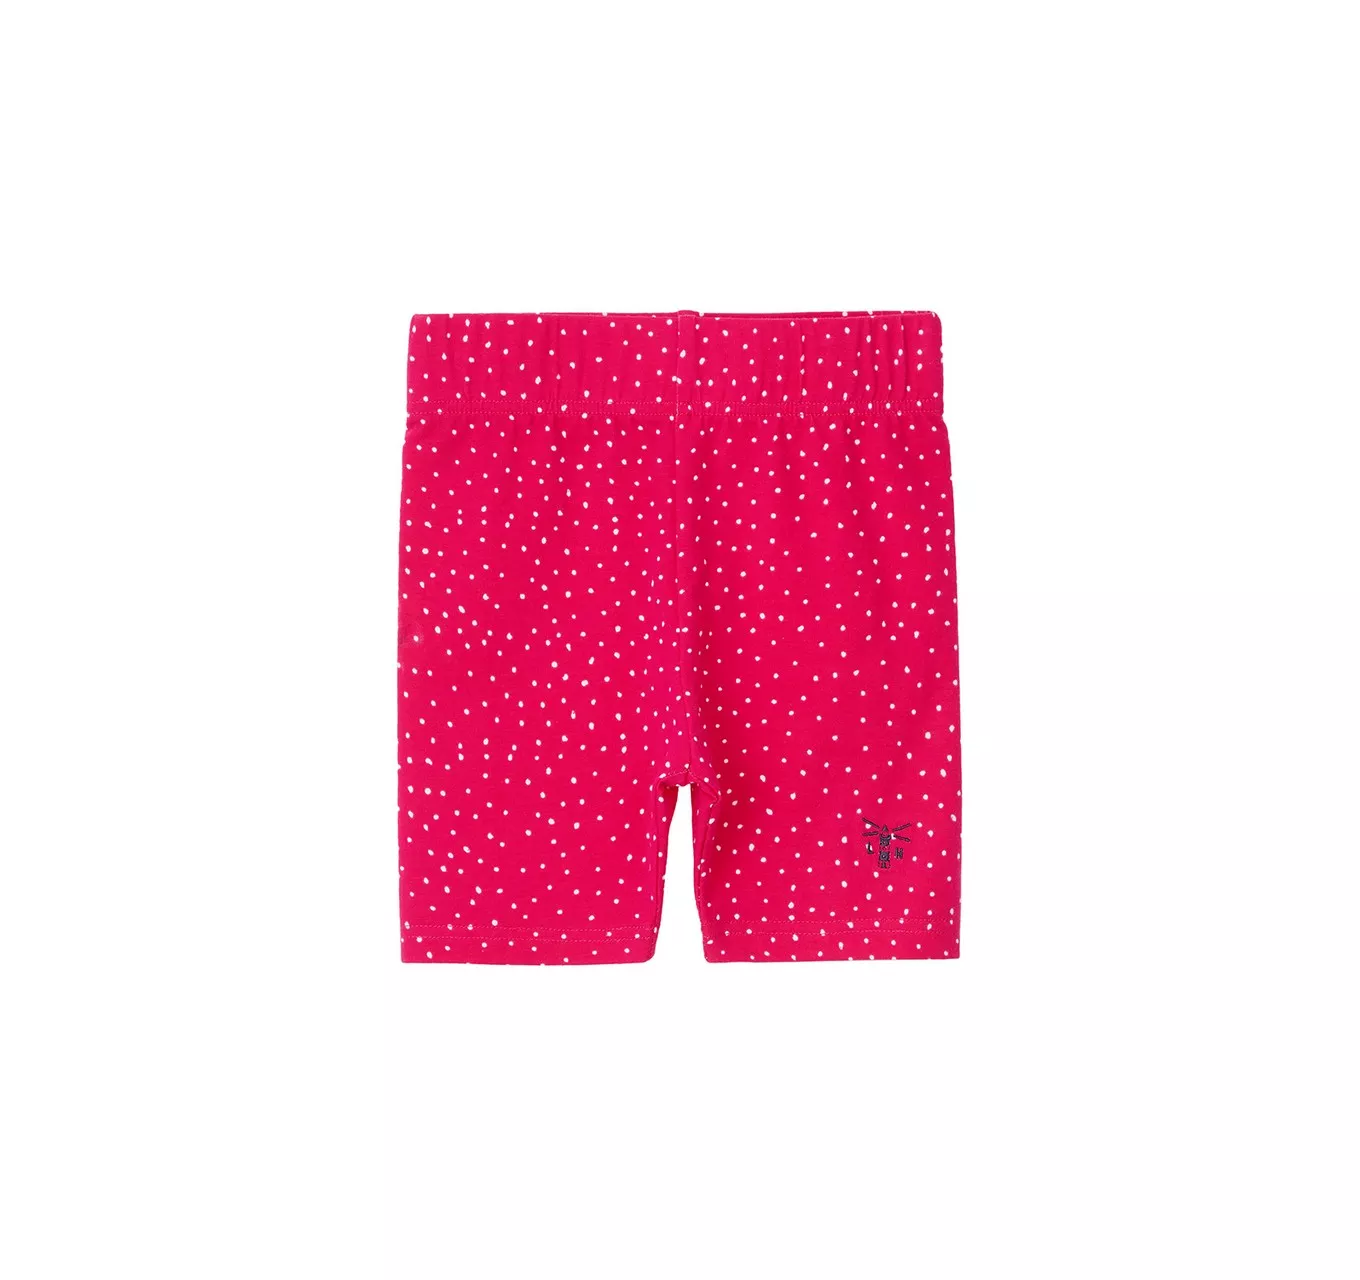 Polly Shorts Pink Dot 6-7